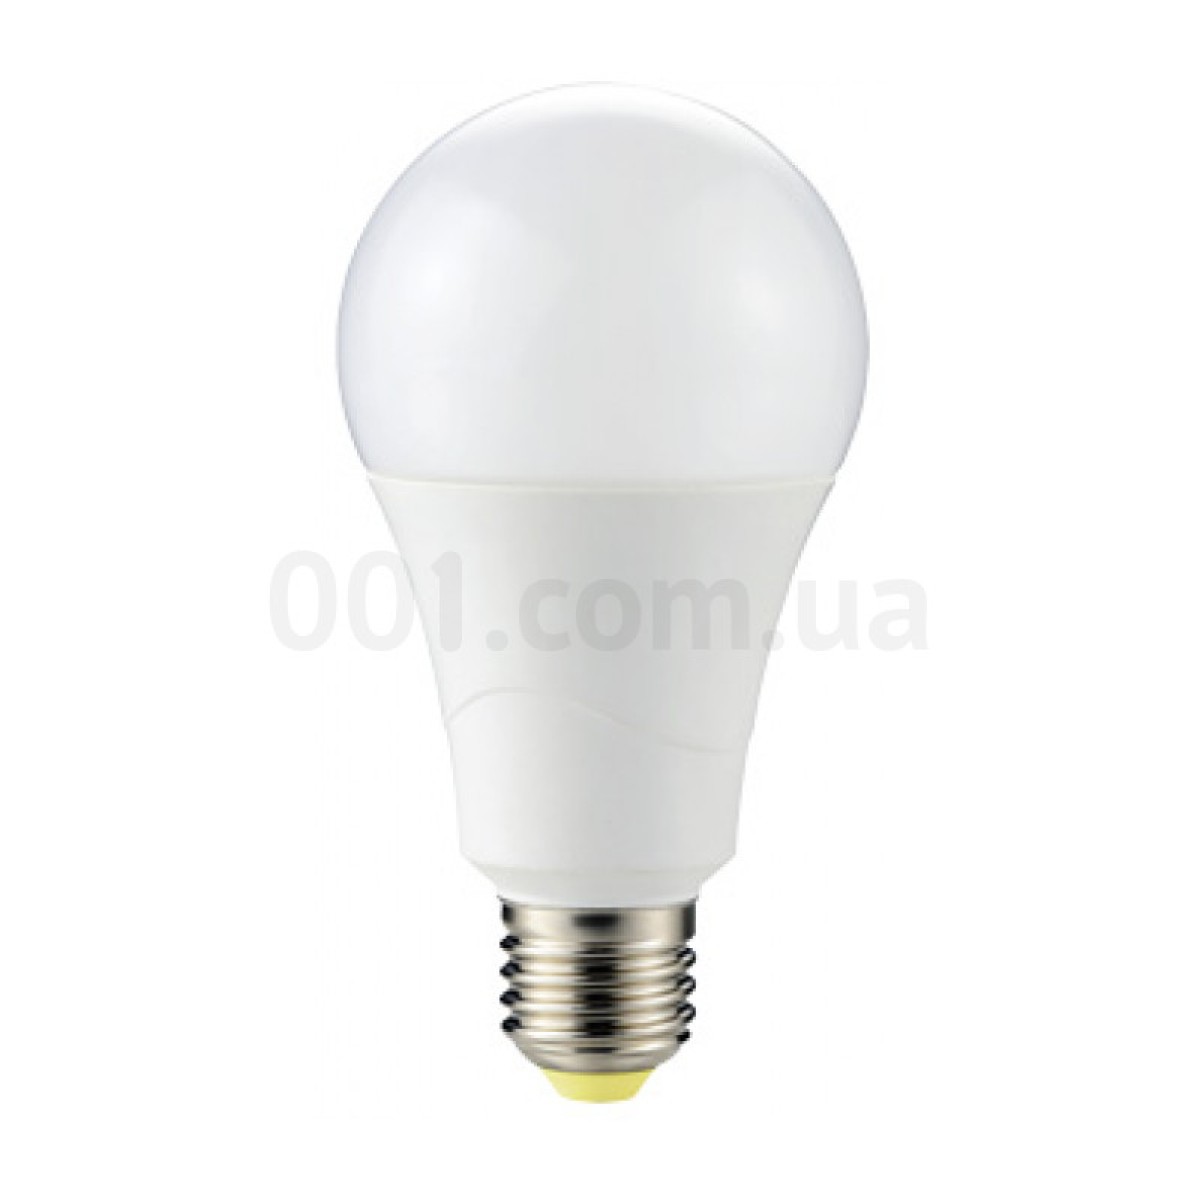 Светодиодная лампа e.LED.lamp.A70.E27.15.3000 15Вт 3000К E27, E.NEXT 256_256.jpg